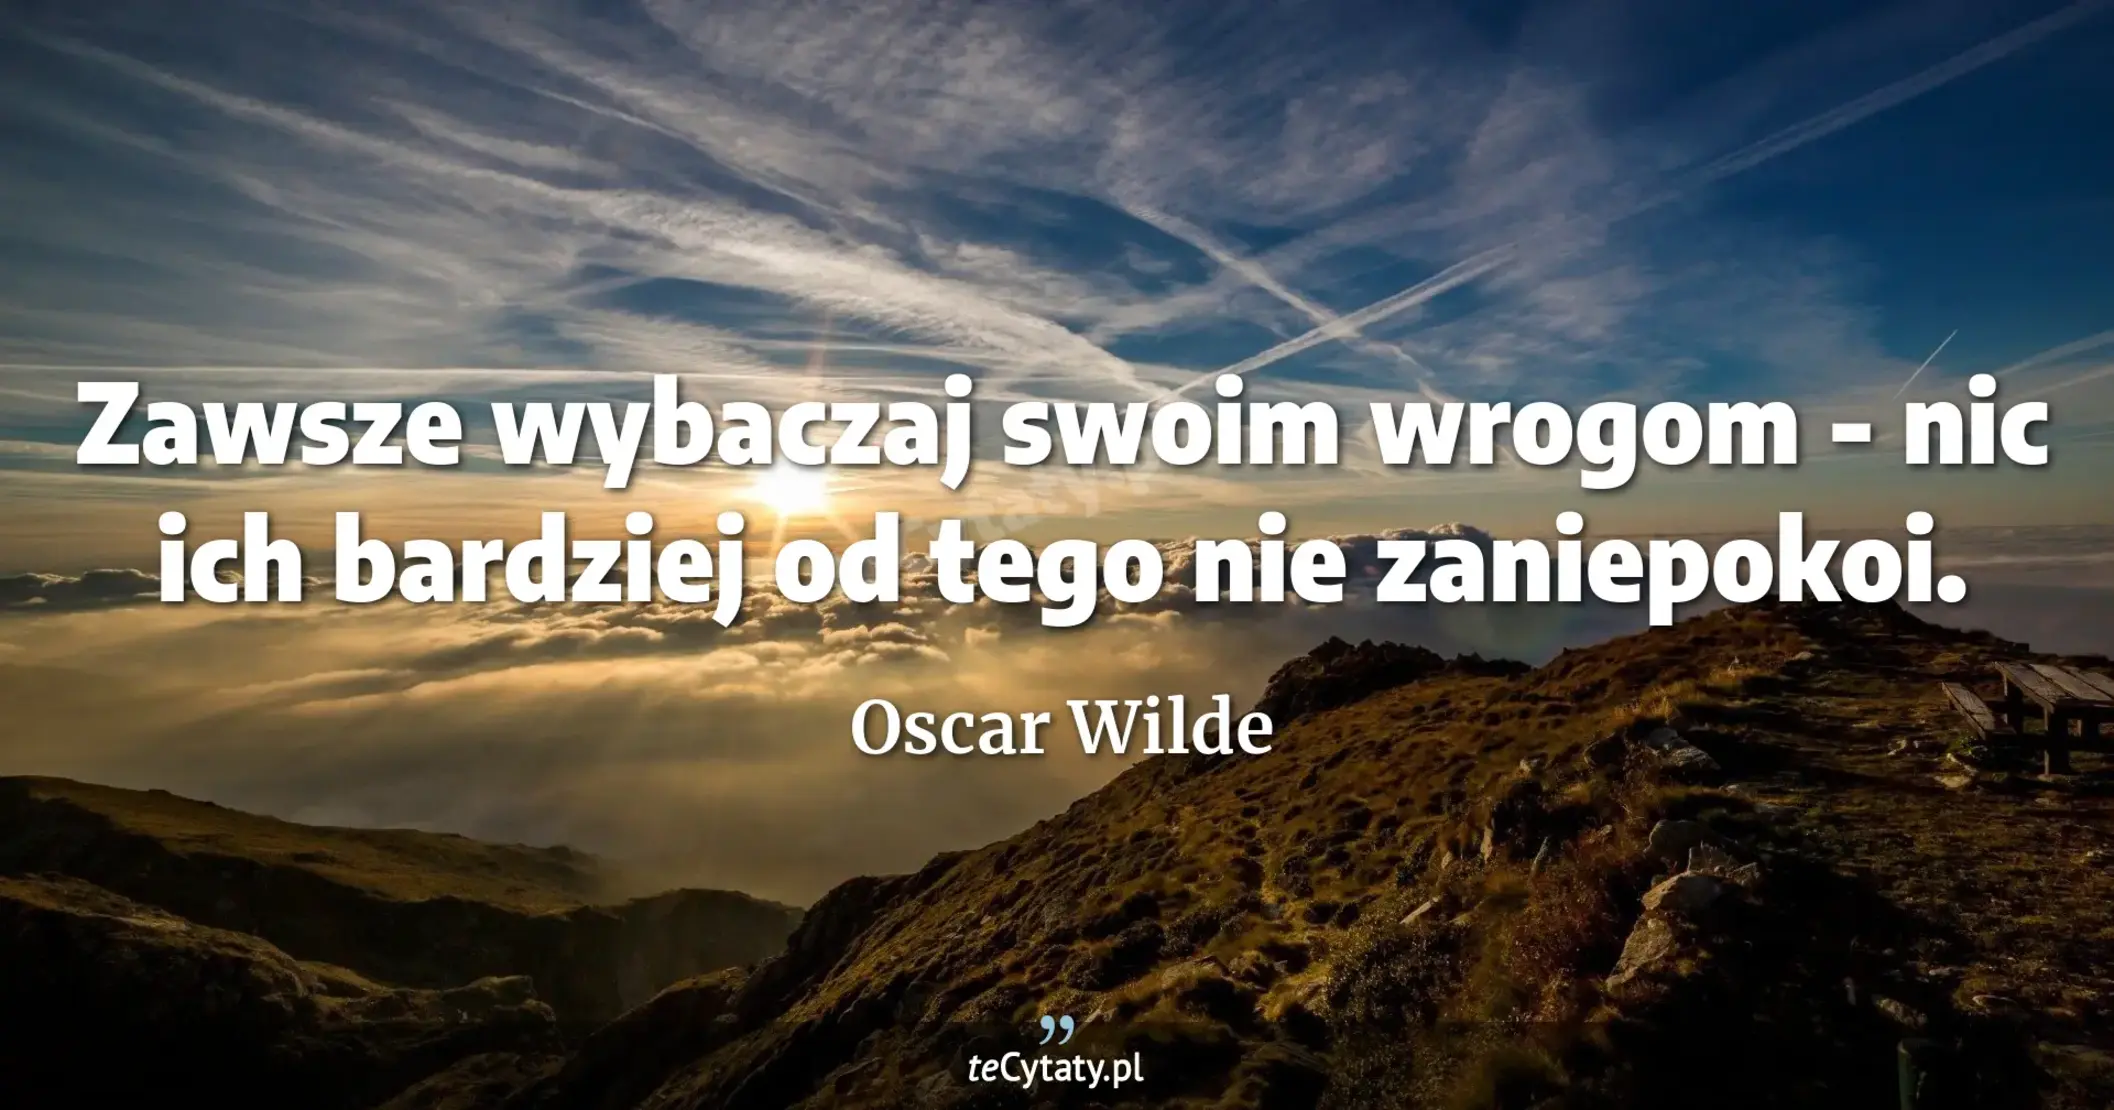 Zawsze wybaczaj swoim wrogom - nic ich bardziej od tego nie zaniepokoi. - Oscar Wilde